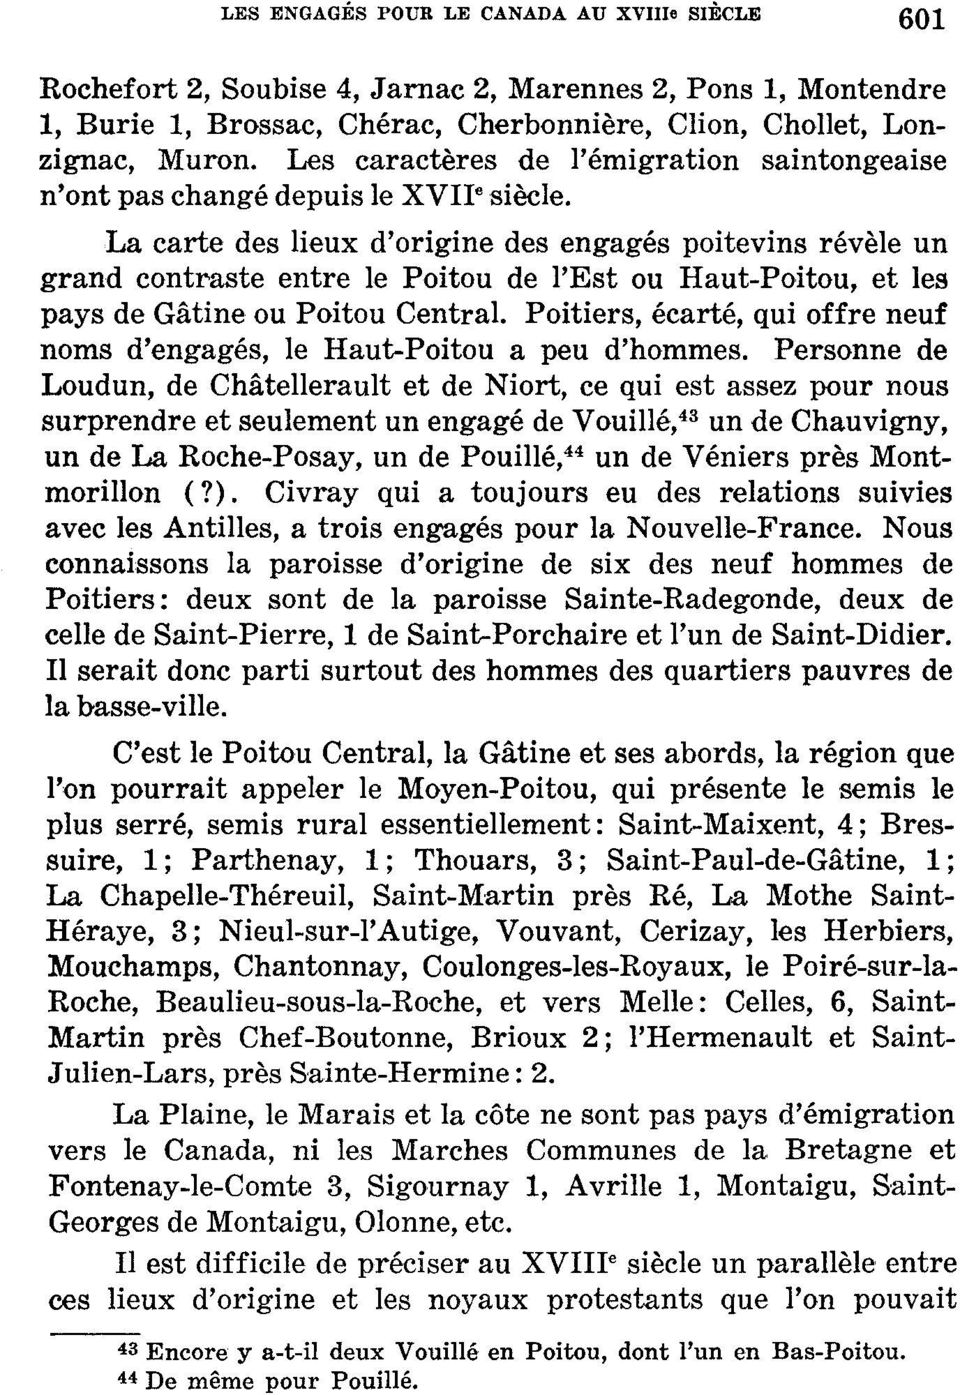 La carte des lieux d'origine des engagés poitevins révèle un grand contraste entre le Poitou de l'est ou Haut-Poitou, et les pays de Gâtine ou Poitou Central.